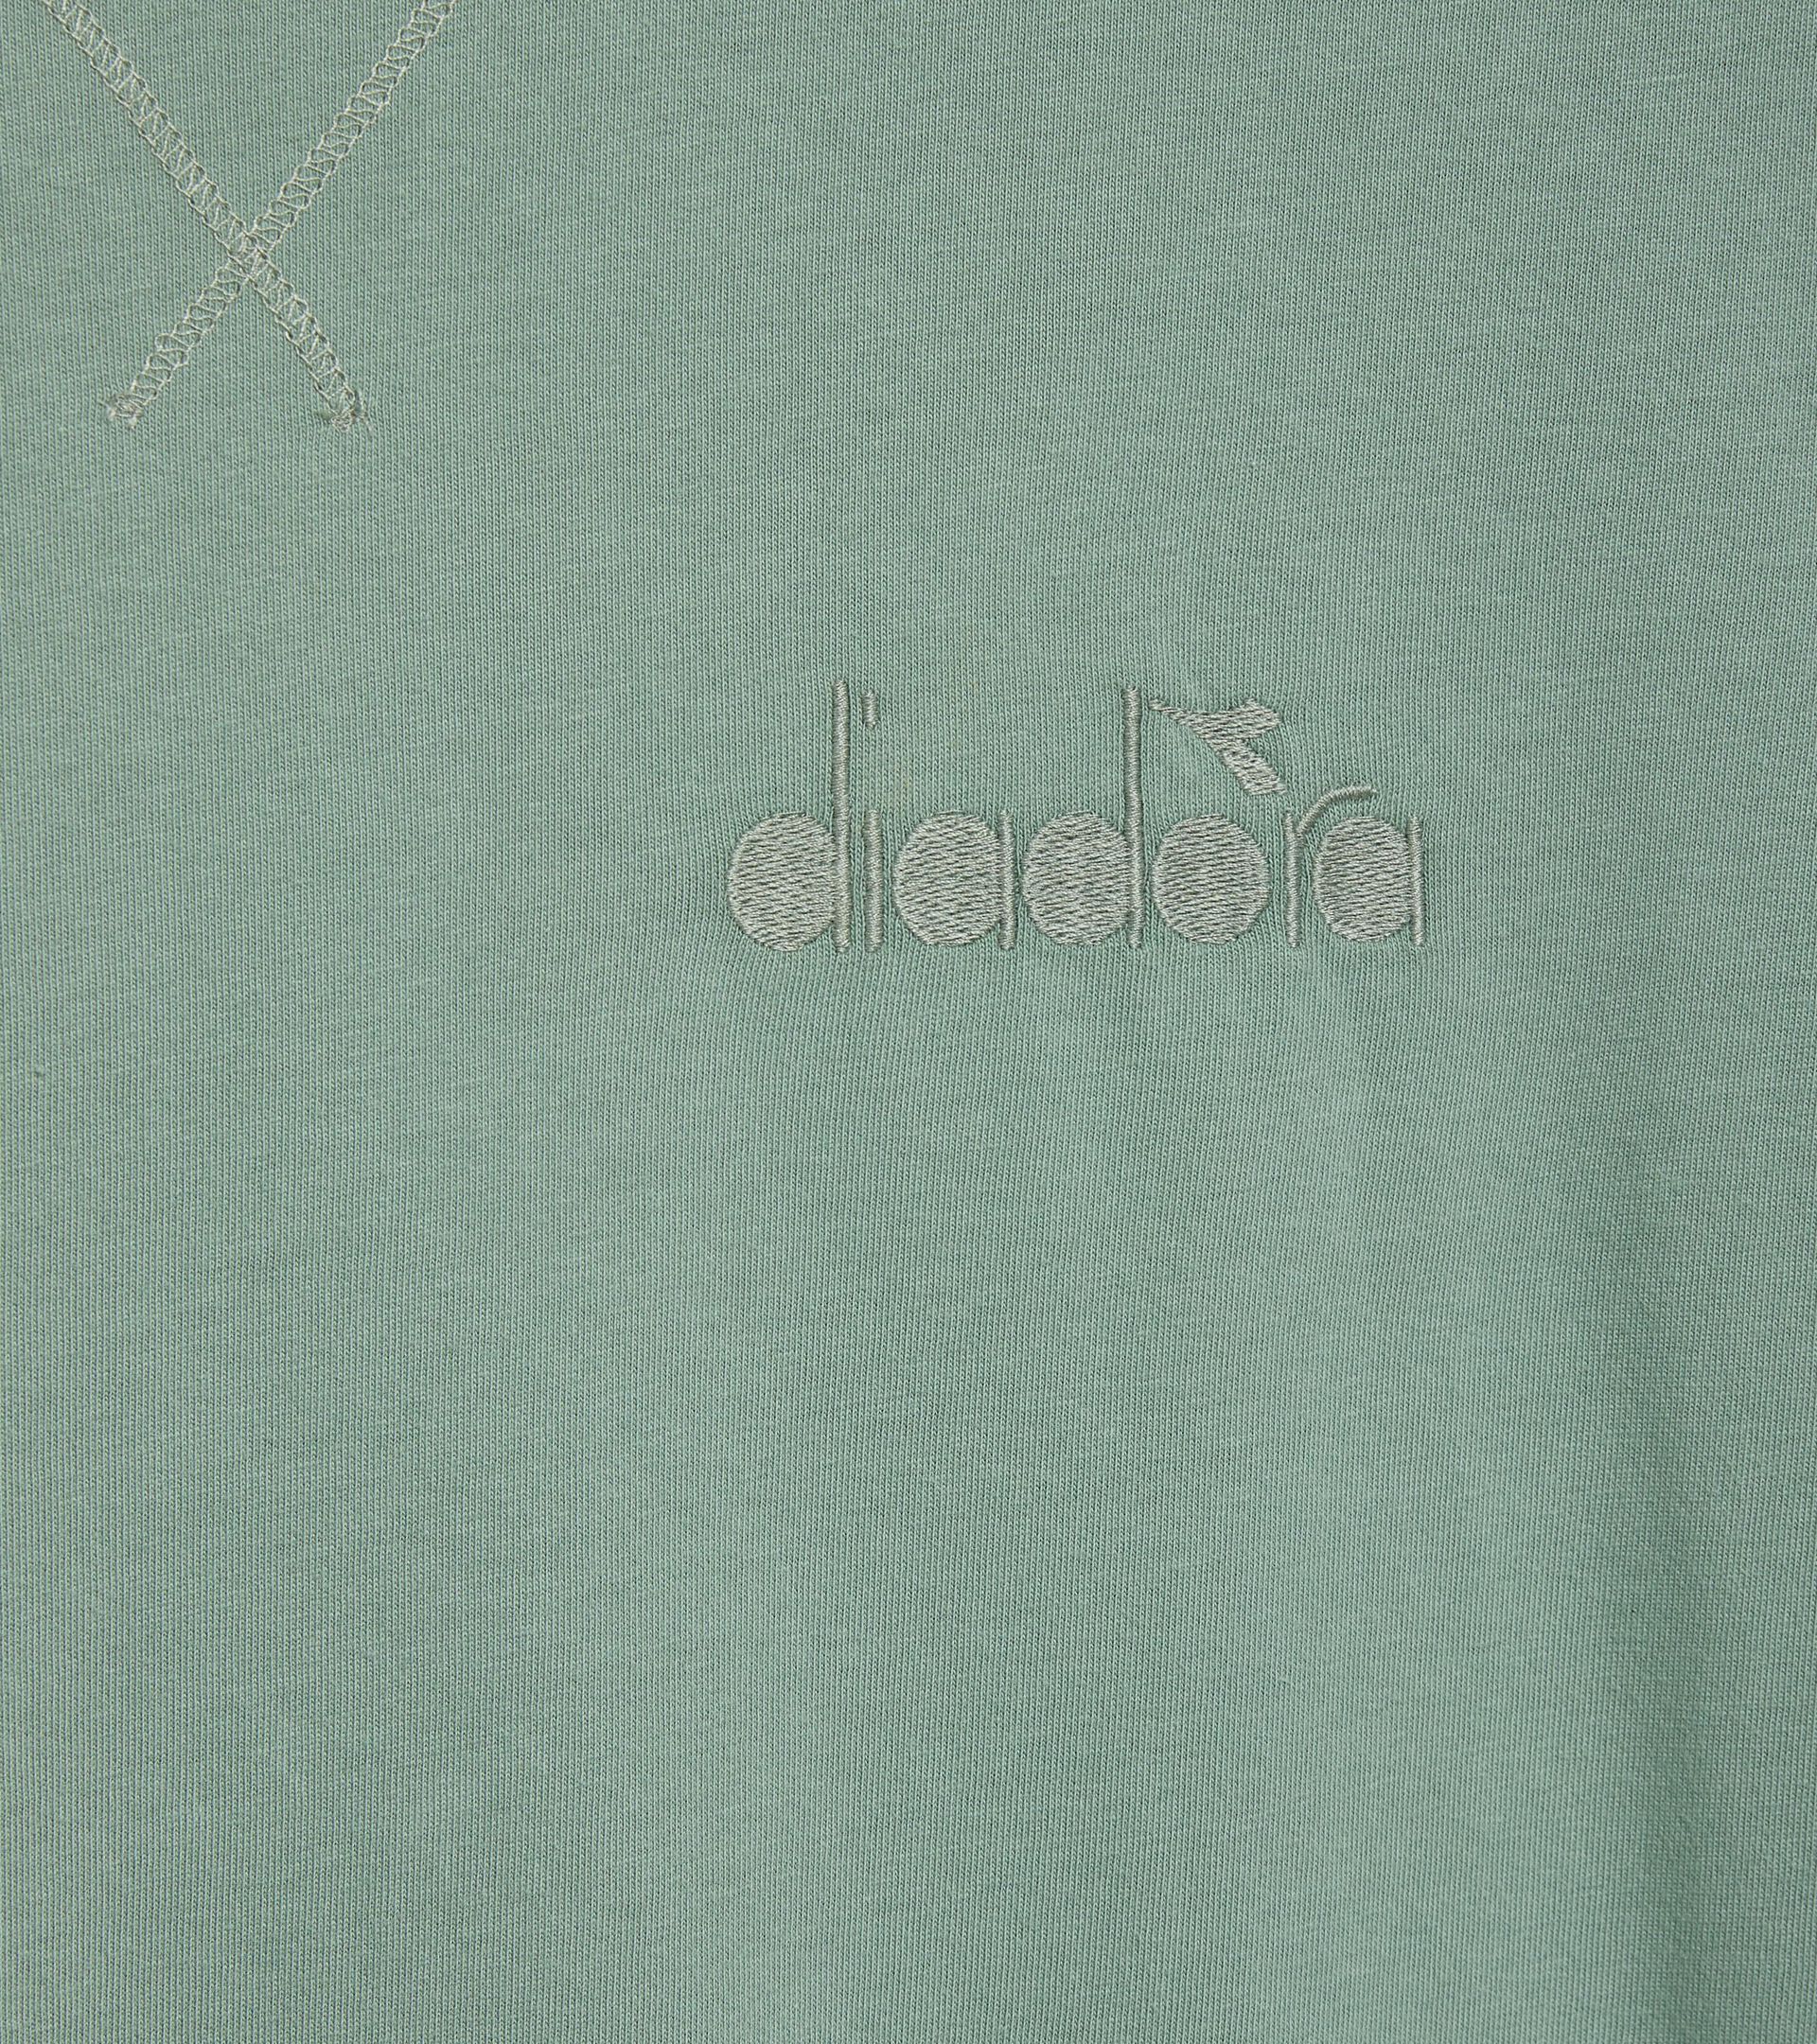 T-shirt - Gender Neutral T-SHIRT SS ATHL. LOGO ICEBERG GREEN - Diadora